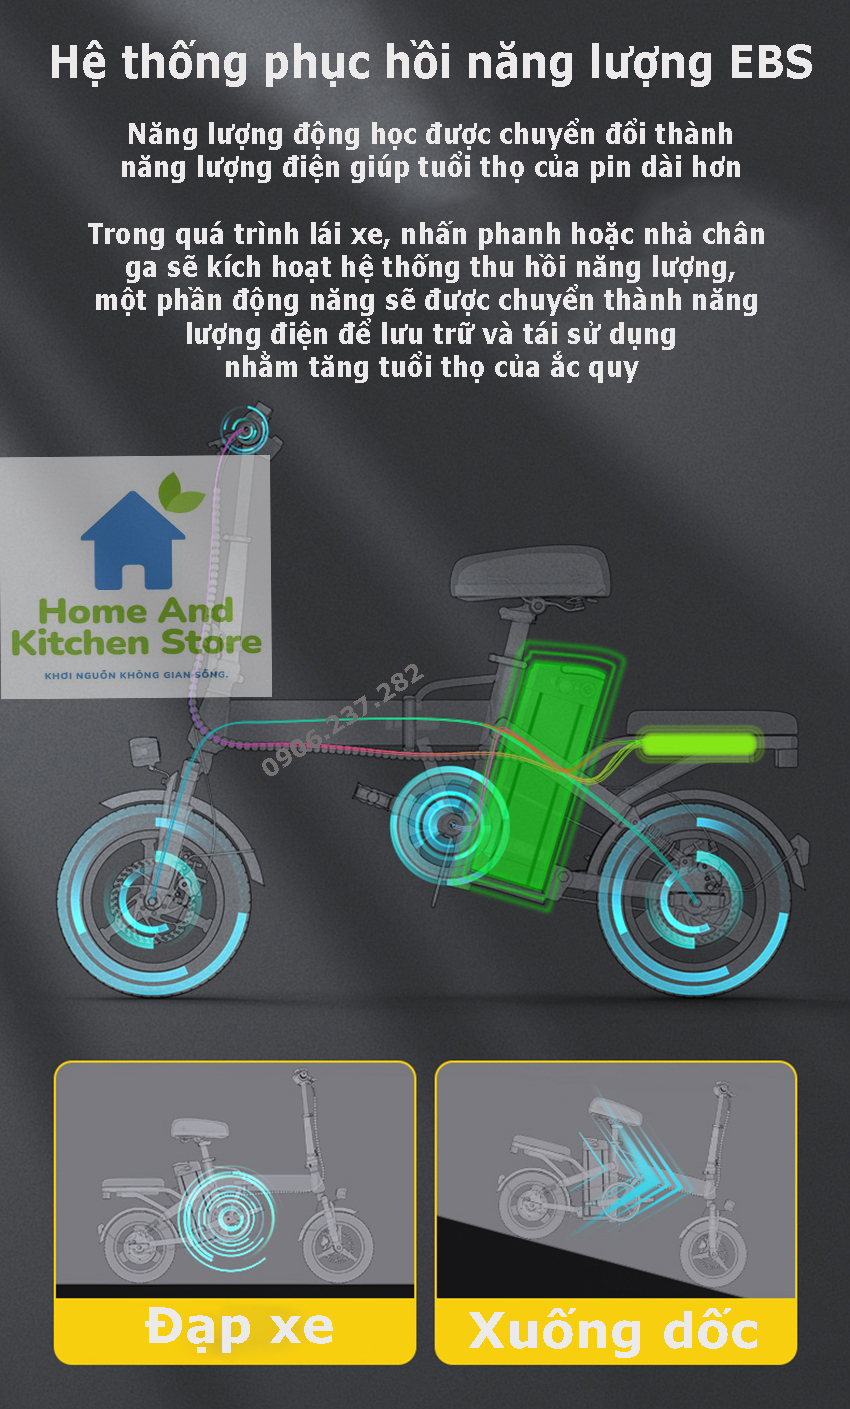 Xe đạp điện xếp gọn Borus 14inch TDT002Z động cơ chống nước và có GPS chống trộm, 48v pin 8A (30km) tốc độ 25km/h